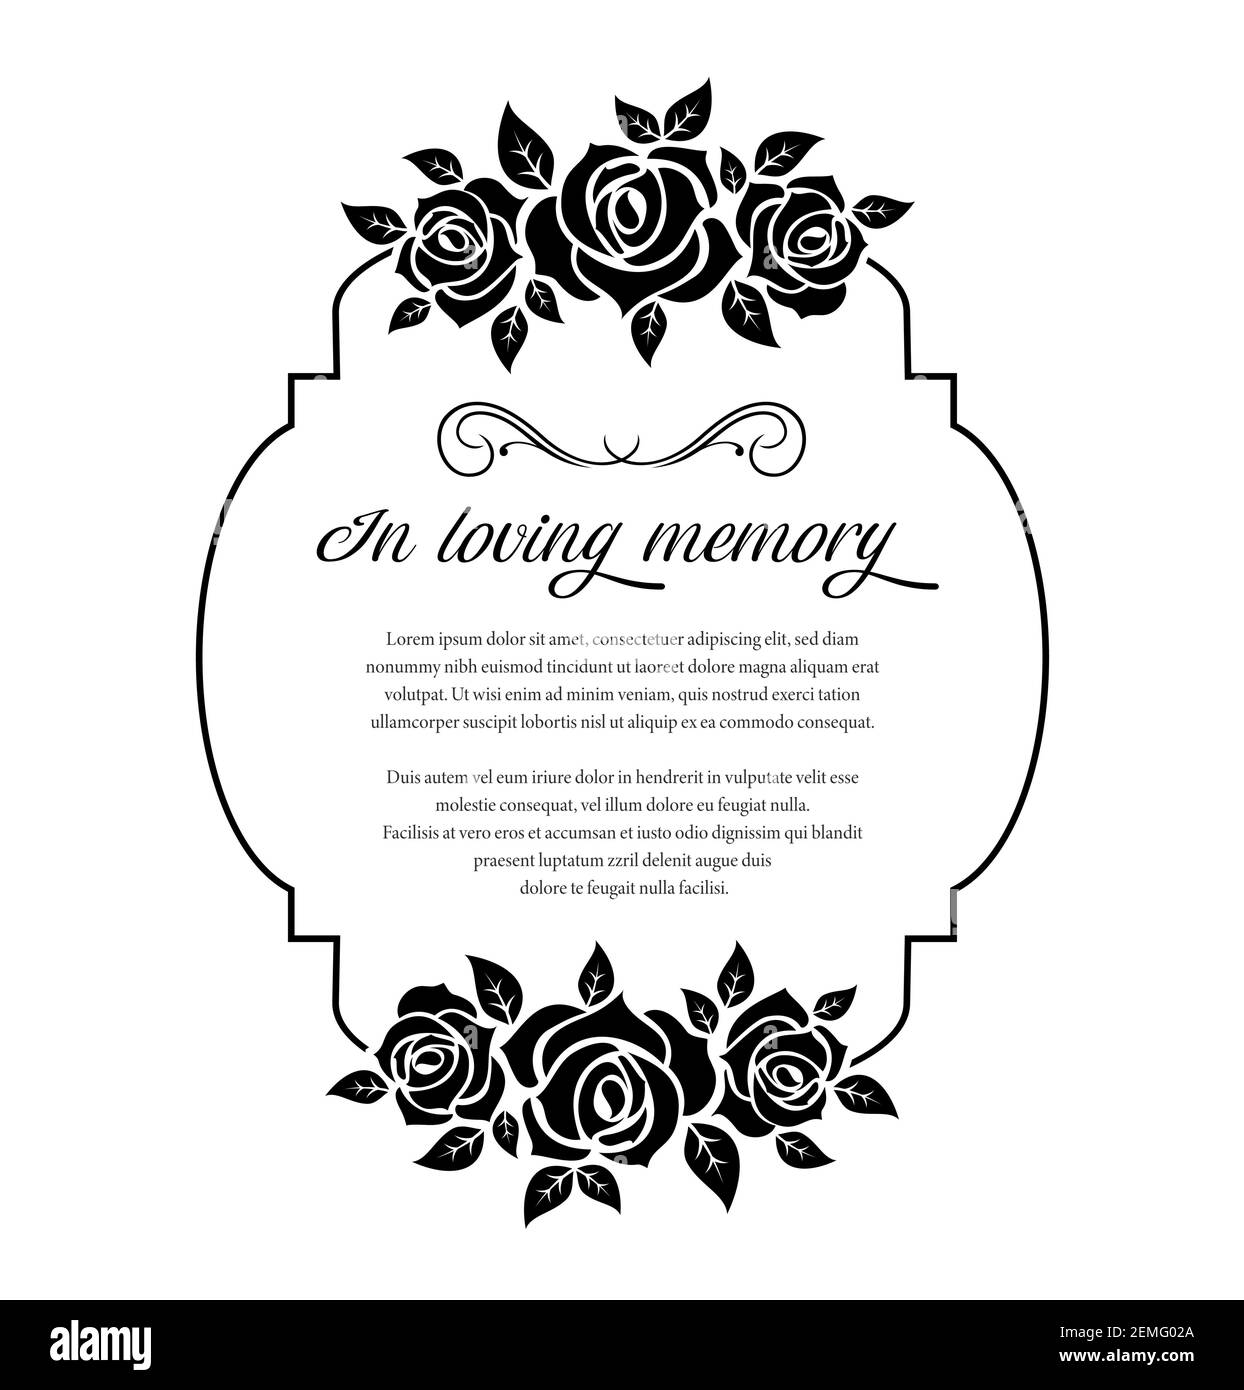 Carte funéraire, vecteur vintage condoléances fleurs roses